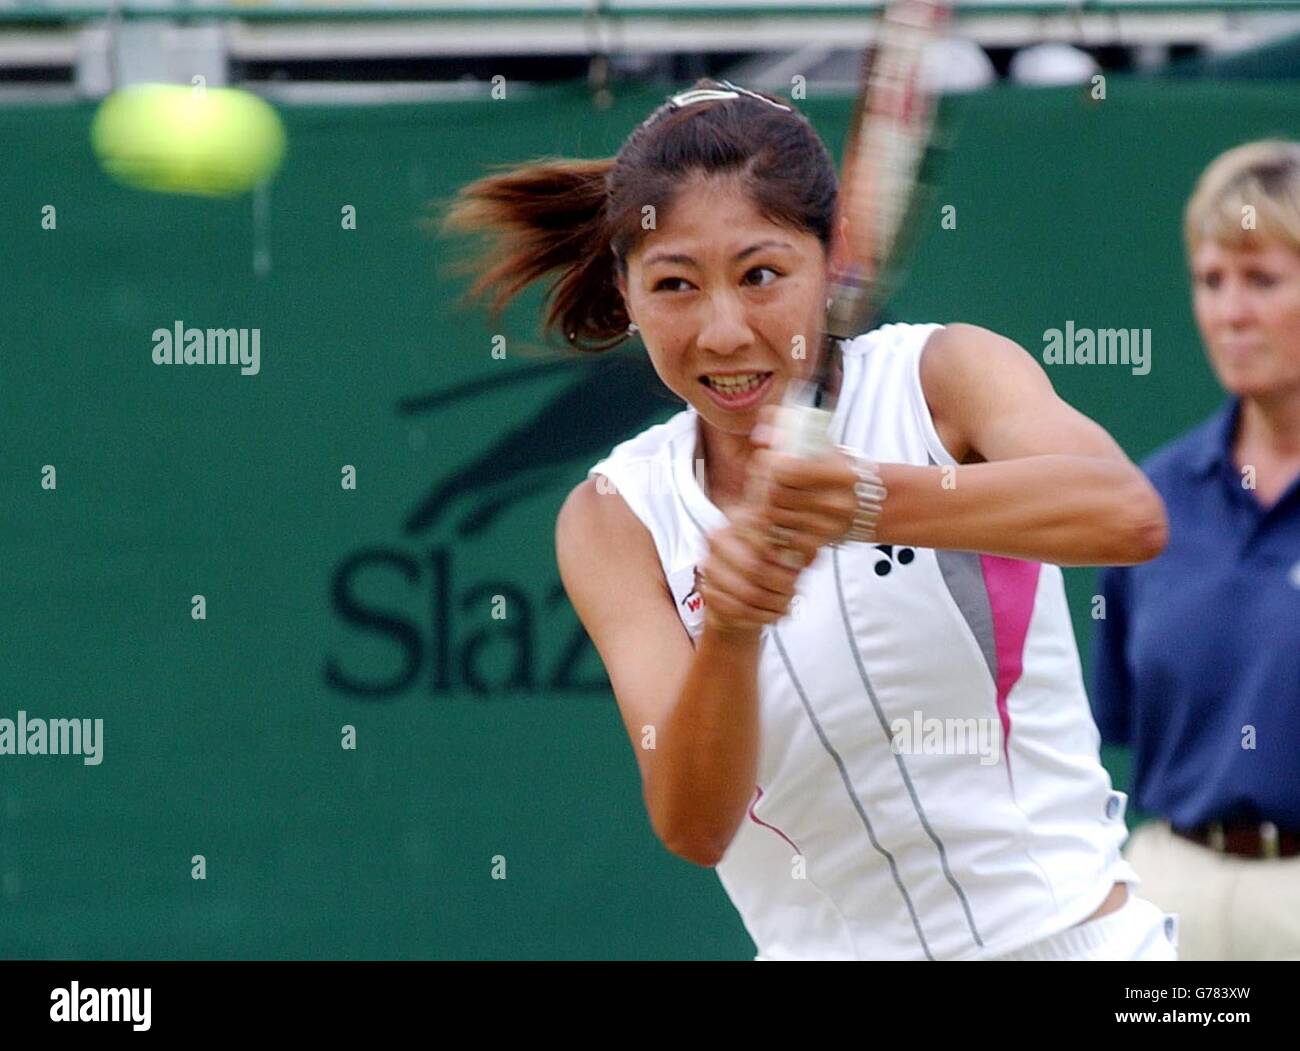 Shinobu Asagoe - DFS Classic Tennis Stock Photo